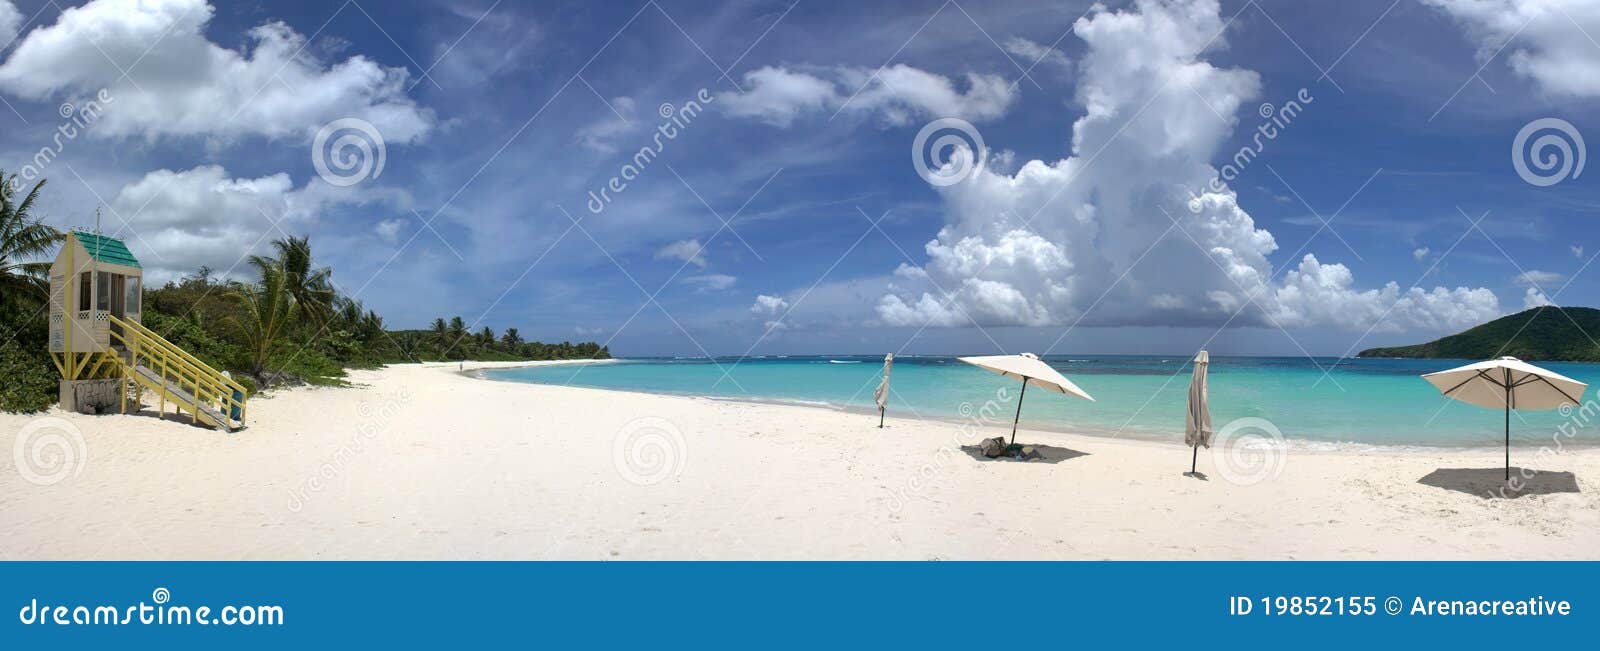 culebra island flamenco beach